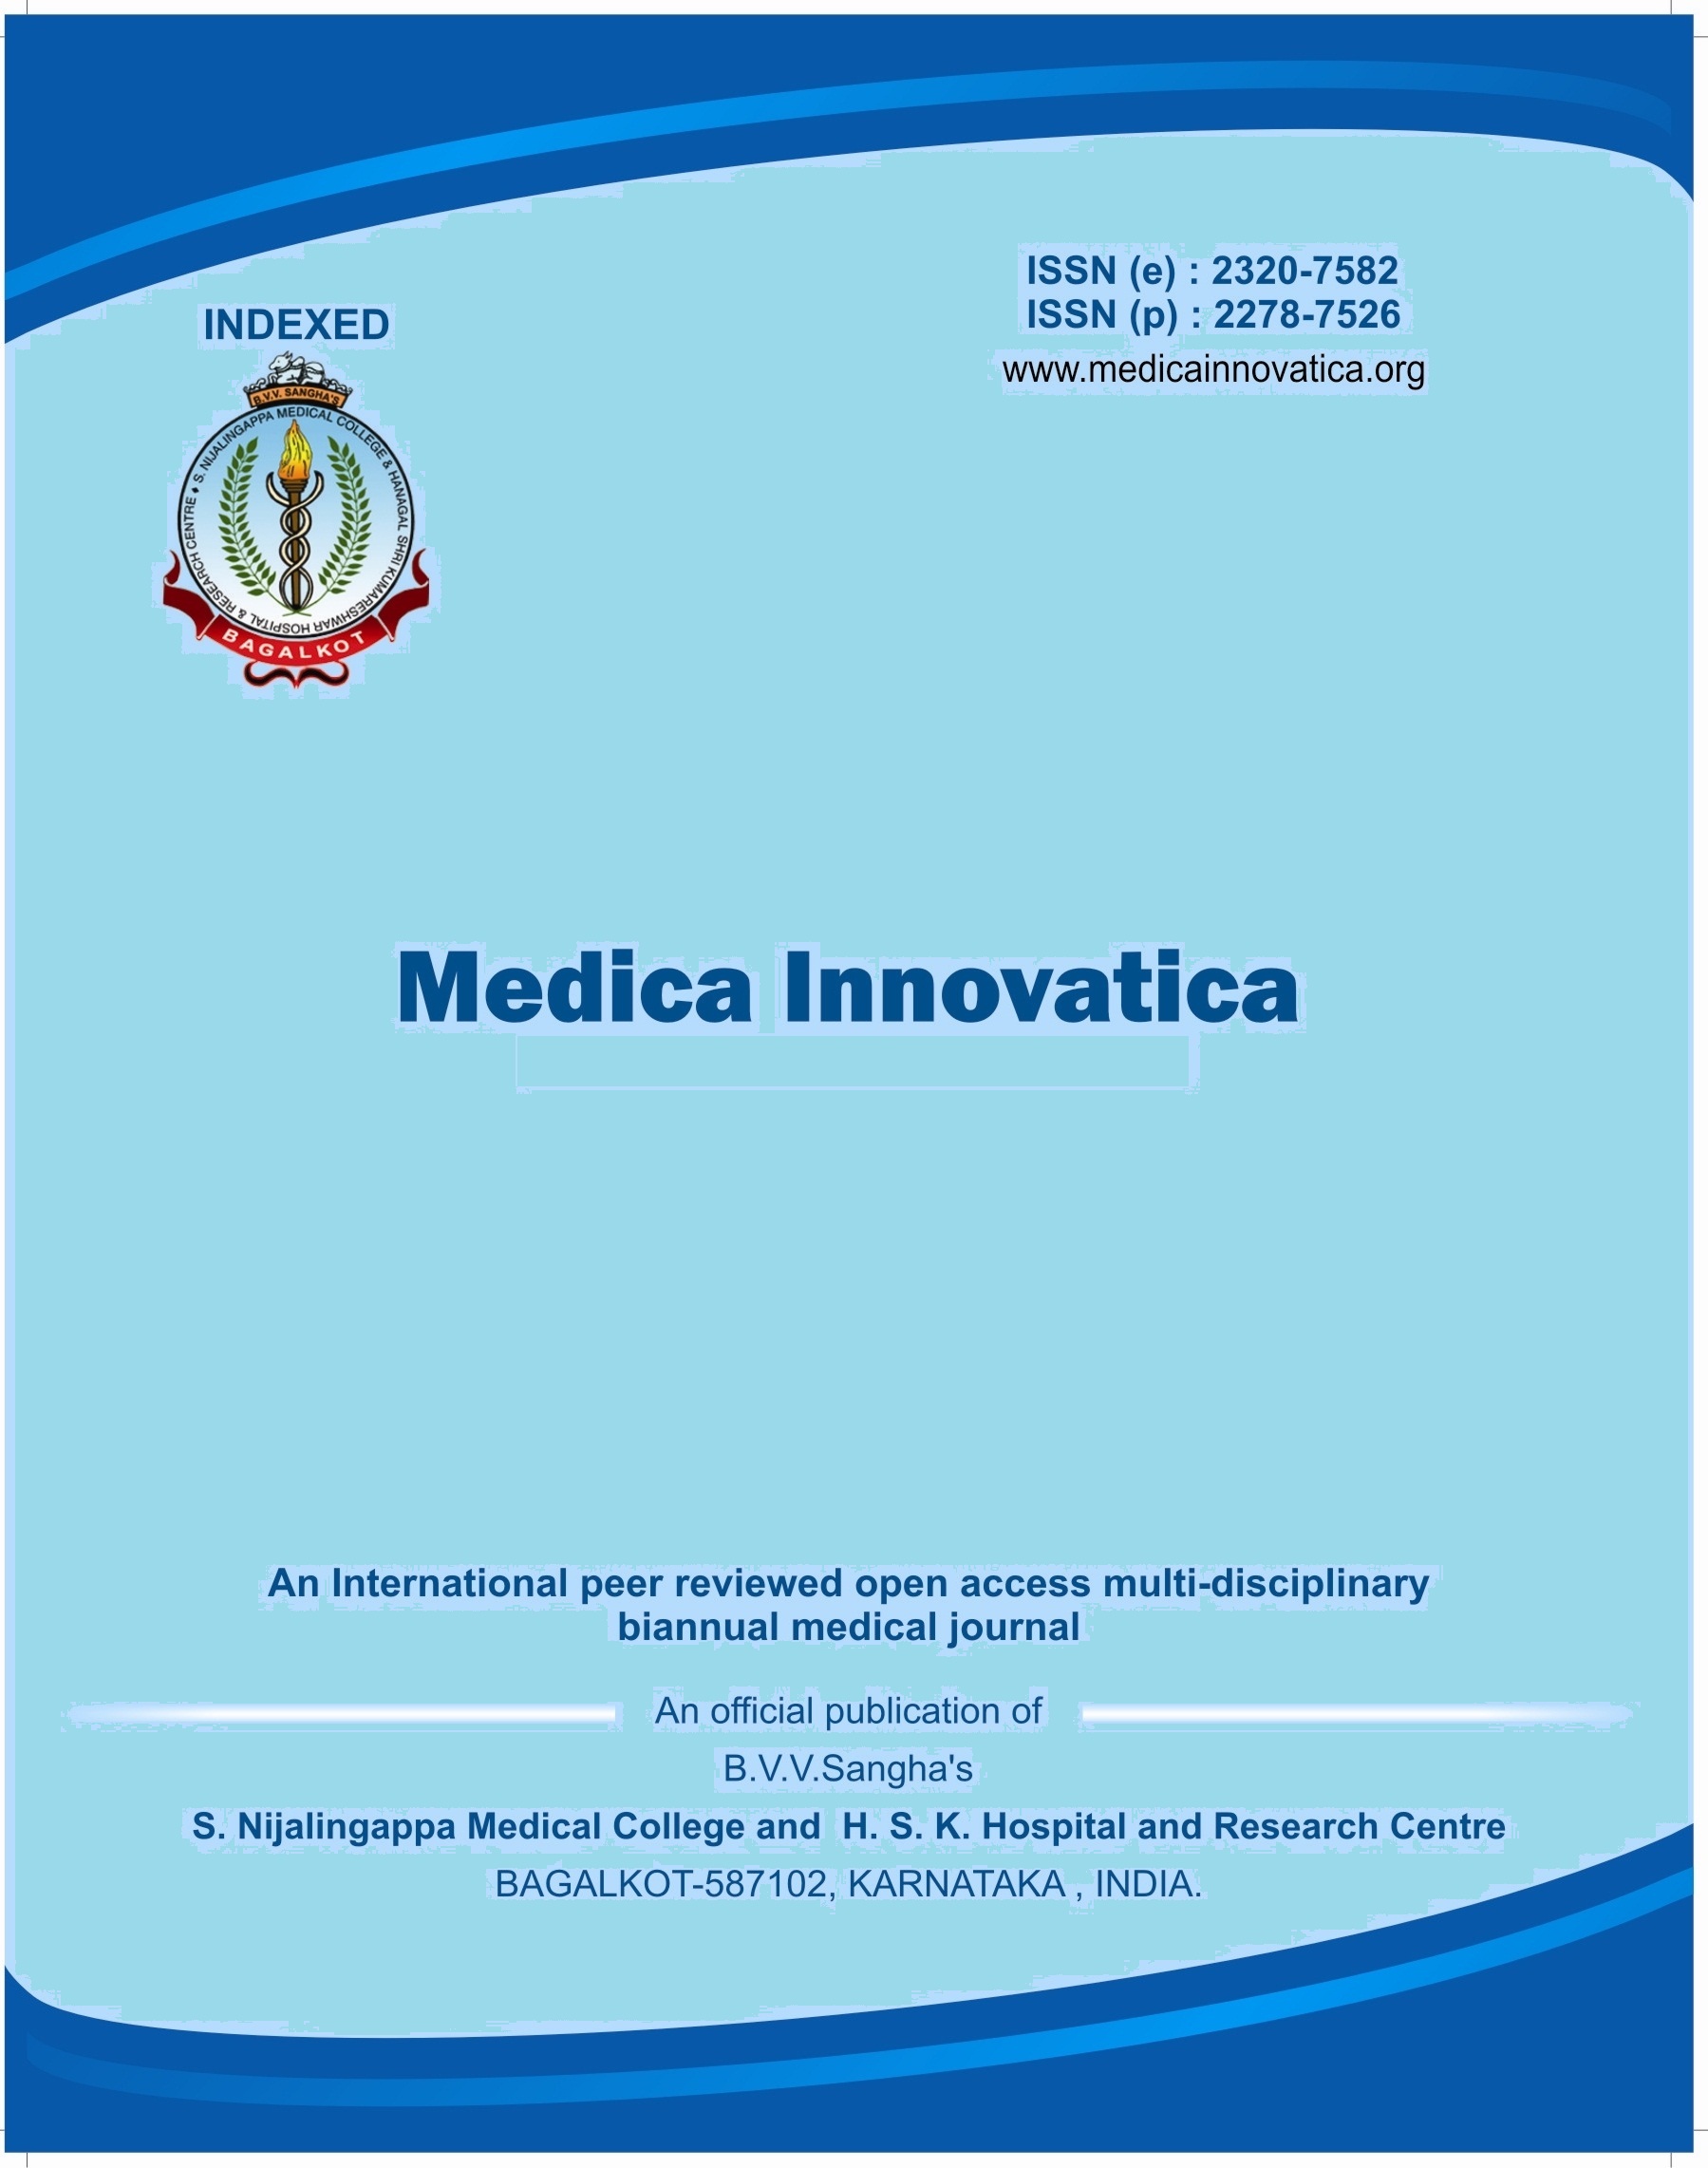 medica innovatica